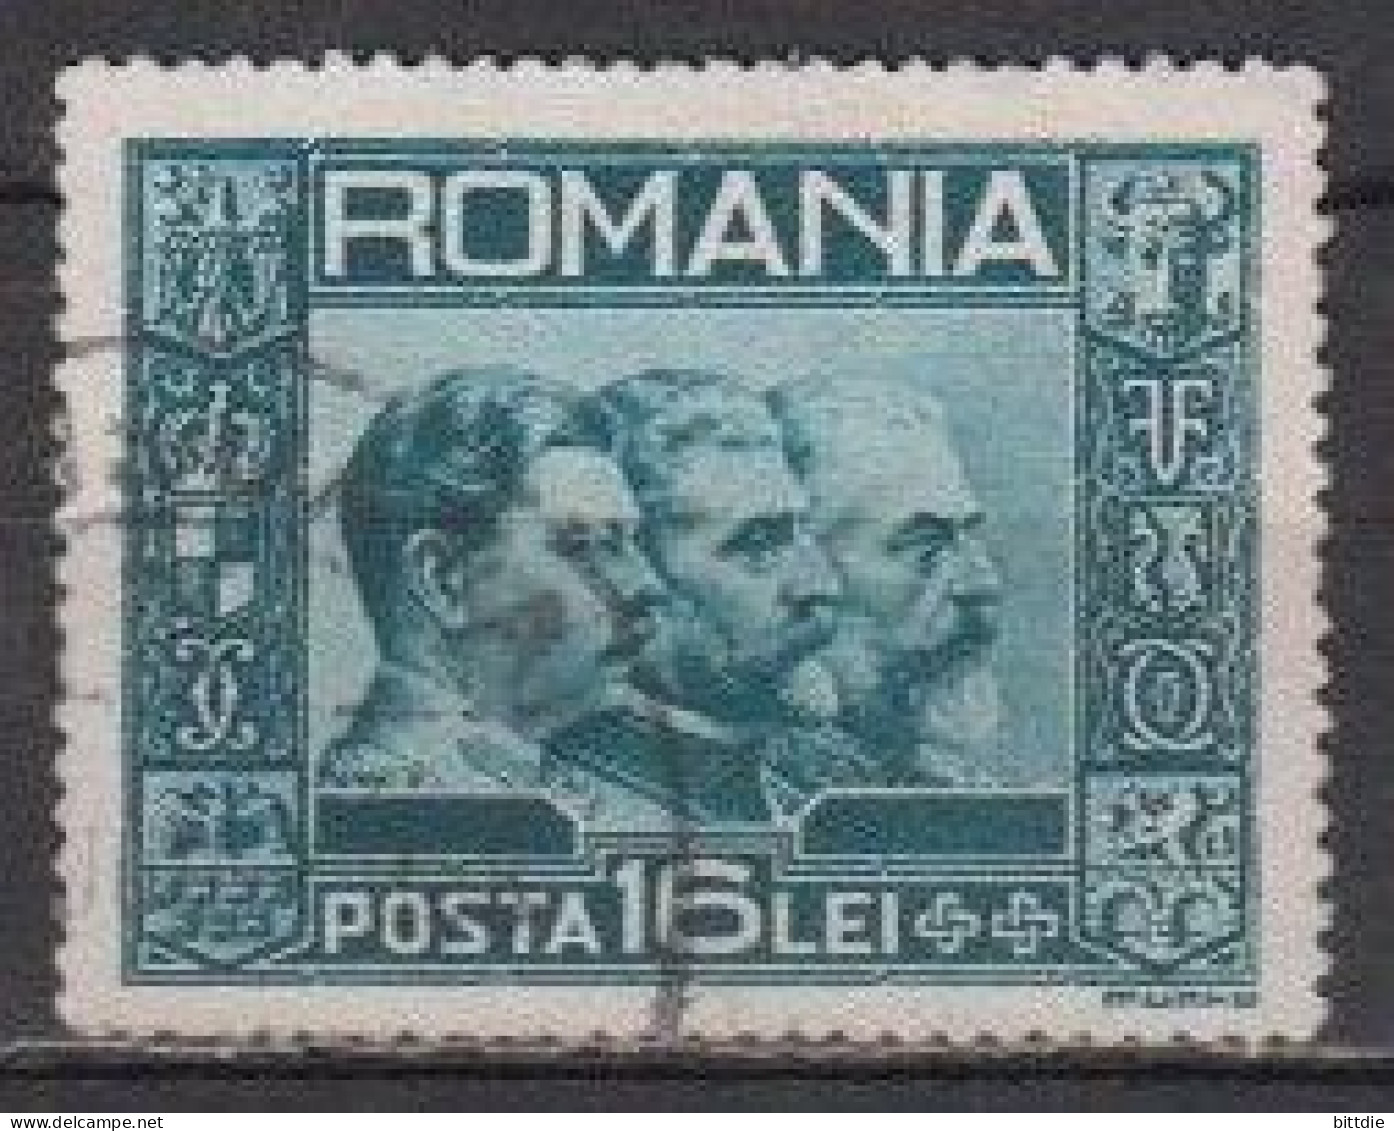 Rumänien  418 , O   (U 6417) - Gebraucht